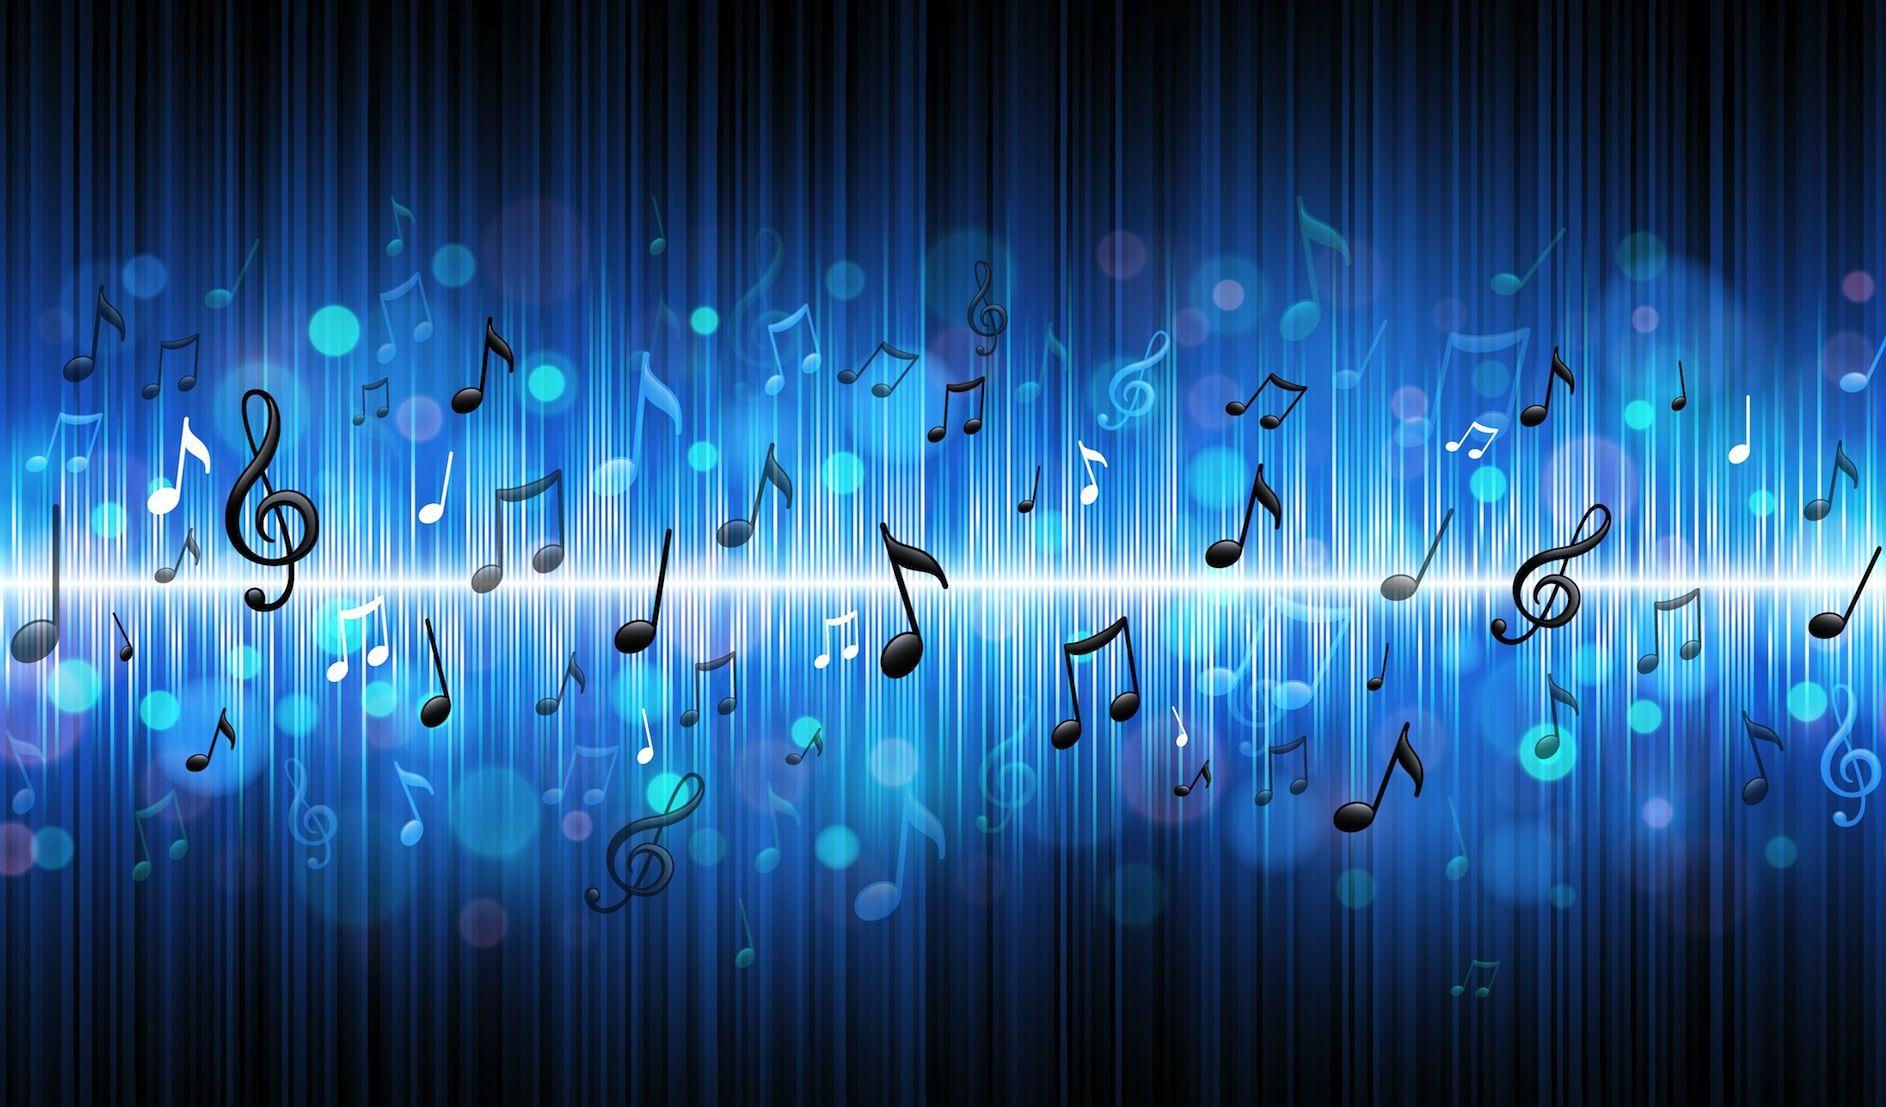 Blue Music Notes Widescreen Wallpaper. Crazy_Music